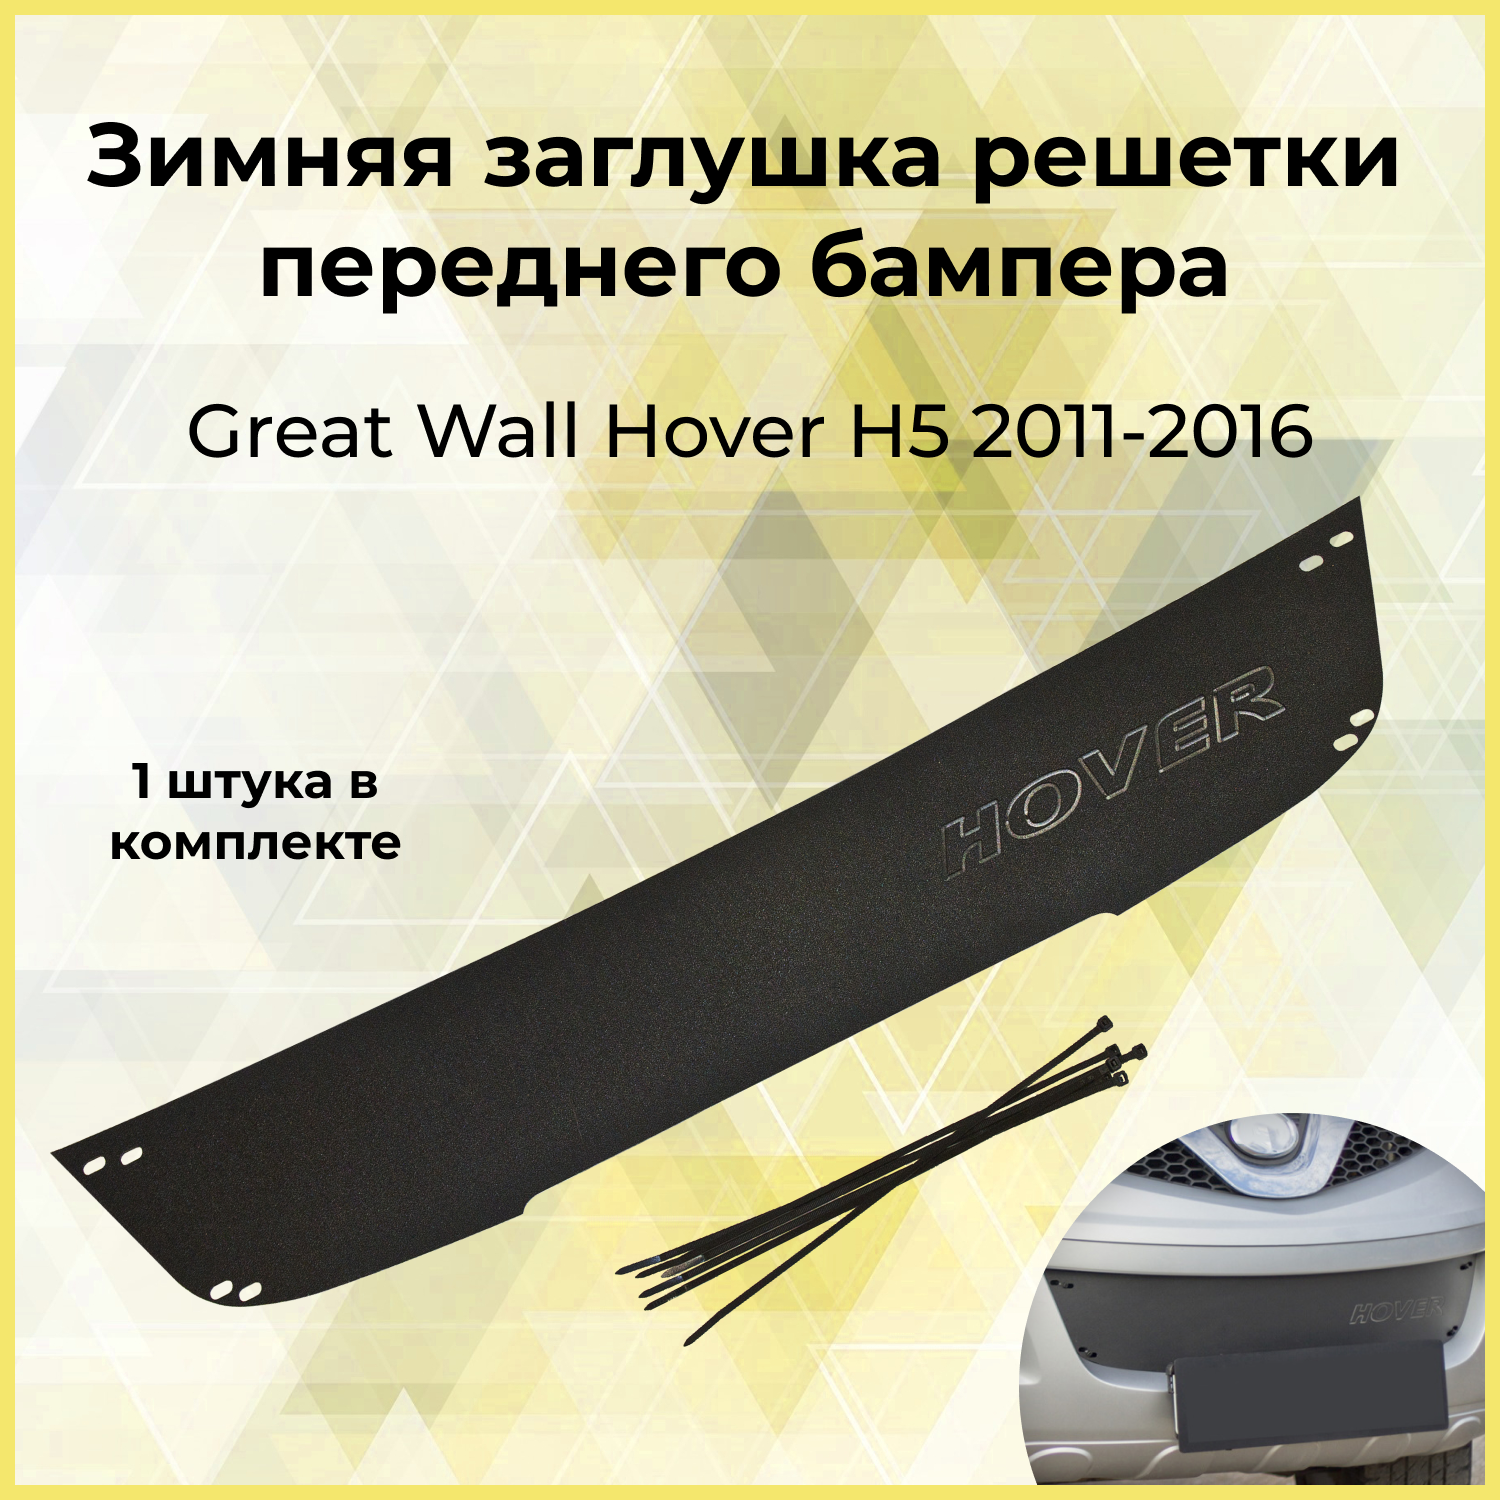 Зимняя заглушка решетки переднего бампера для GREAT WALL Hover H5 2011-2016 шагрень